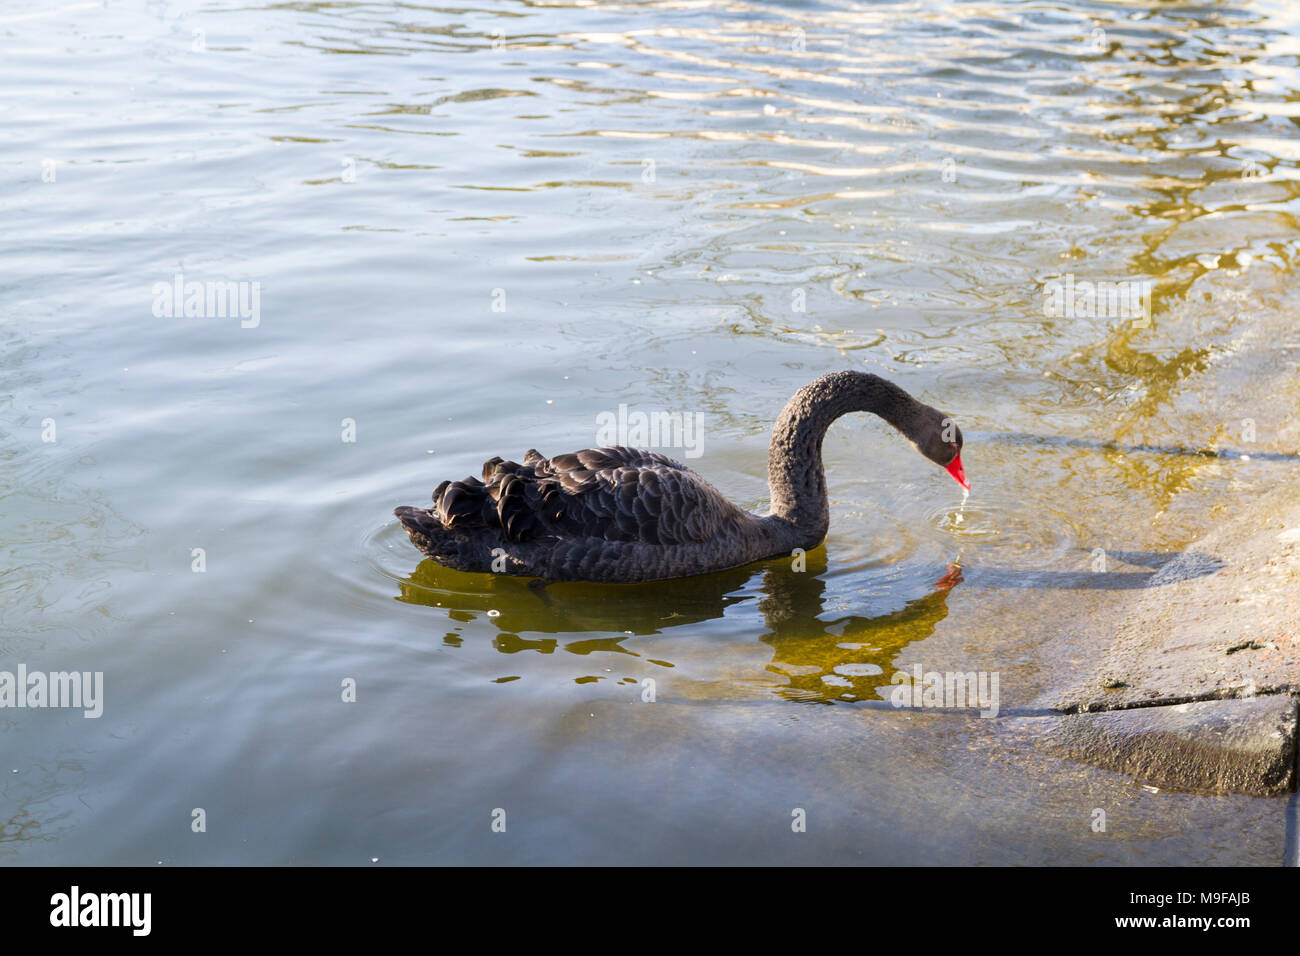 Ein schwarzer Schwan Schwimmen in einem See in St. James Park London UK, Natur, Wildlife Konzept, kalter Frühling Tag allein einsame mono Einzelnen Stockfoto